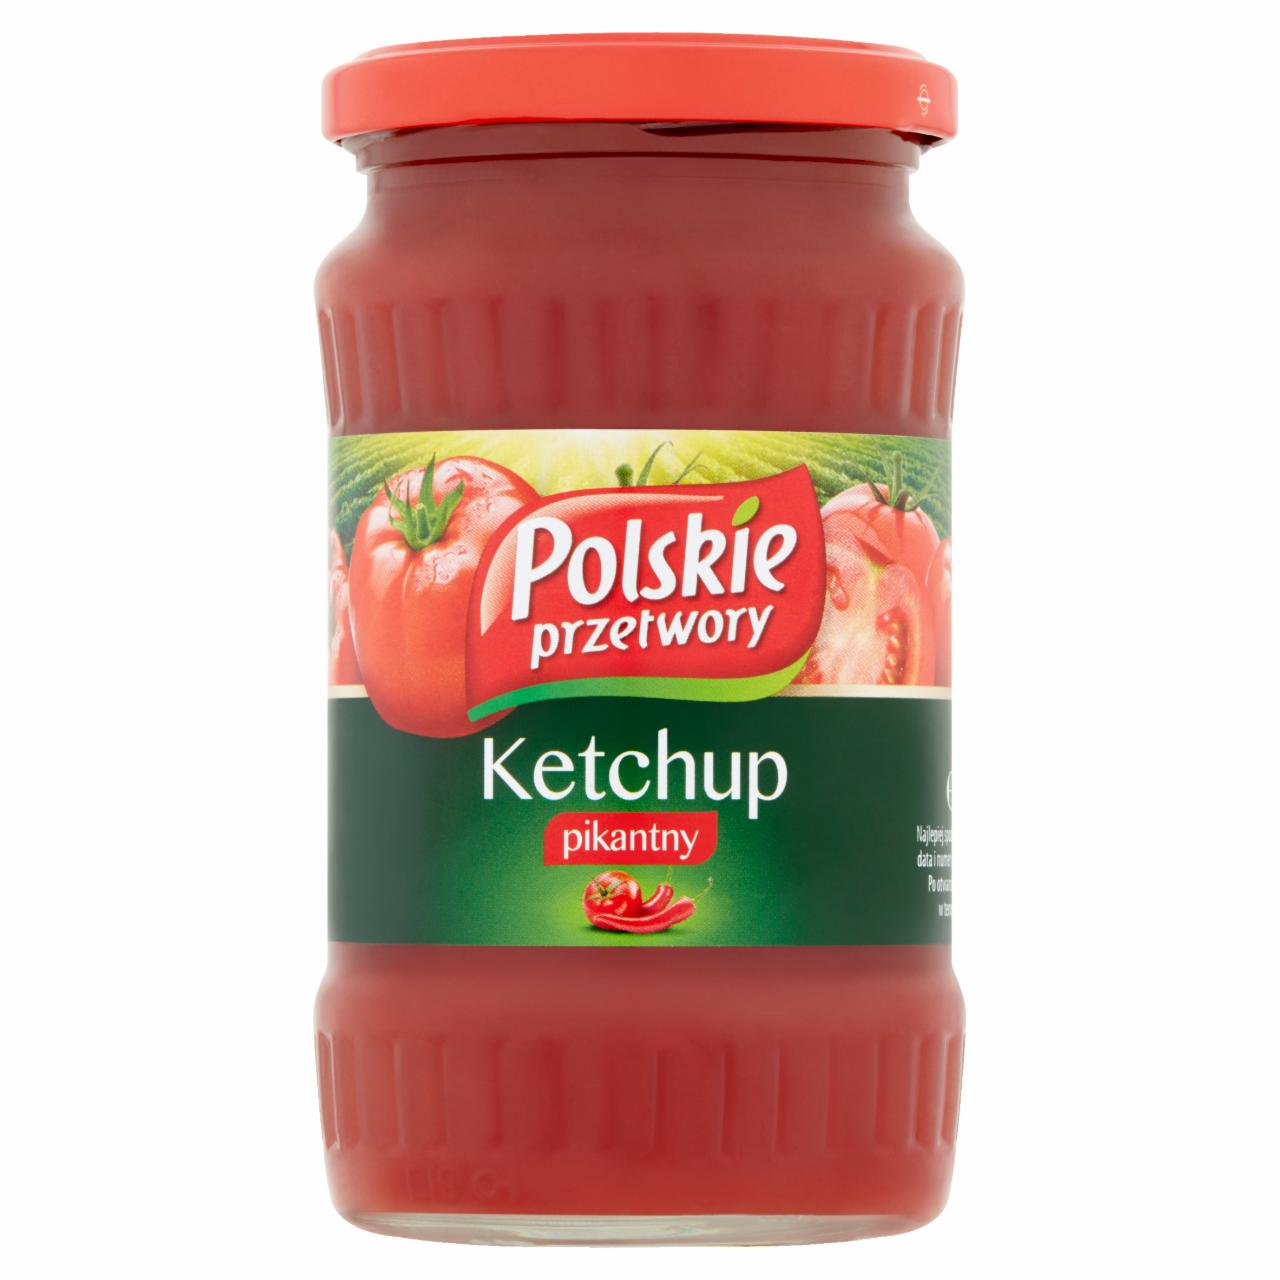 Zdjęcia - Polskie przetwory Ketchup pikantny 380 g